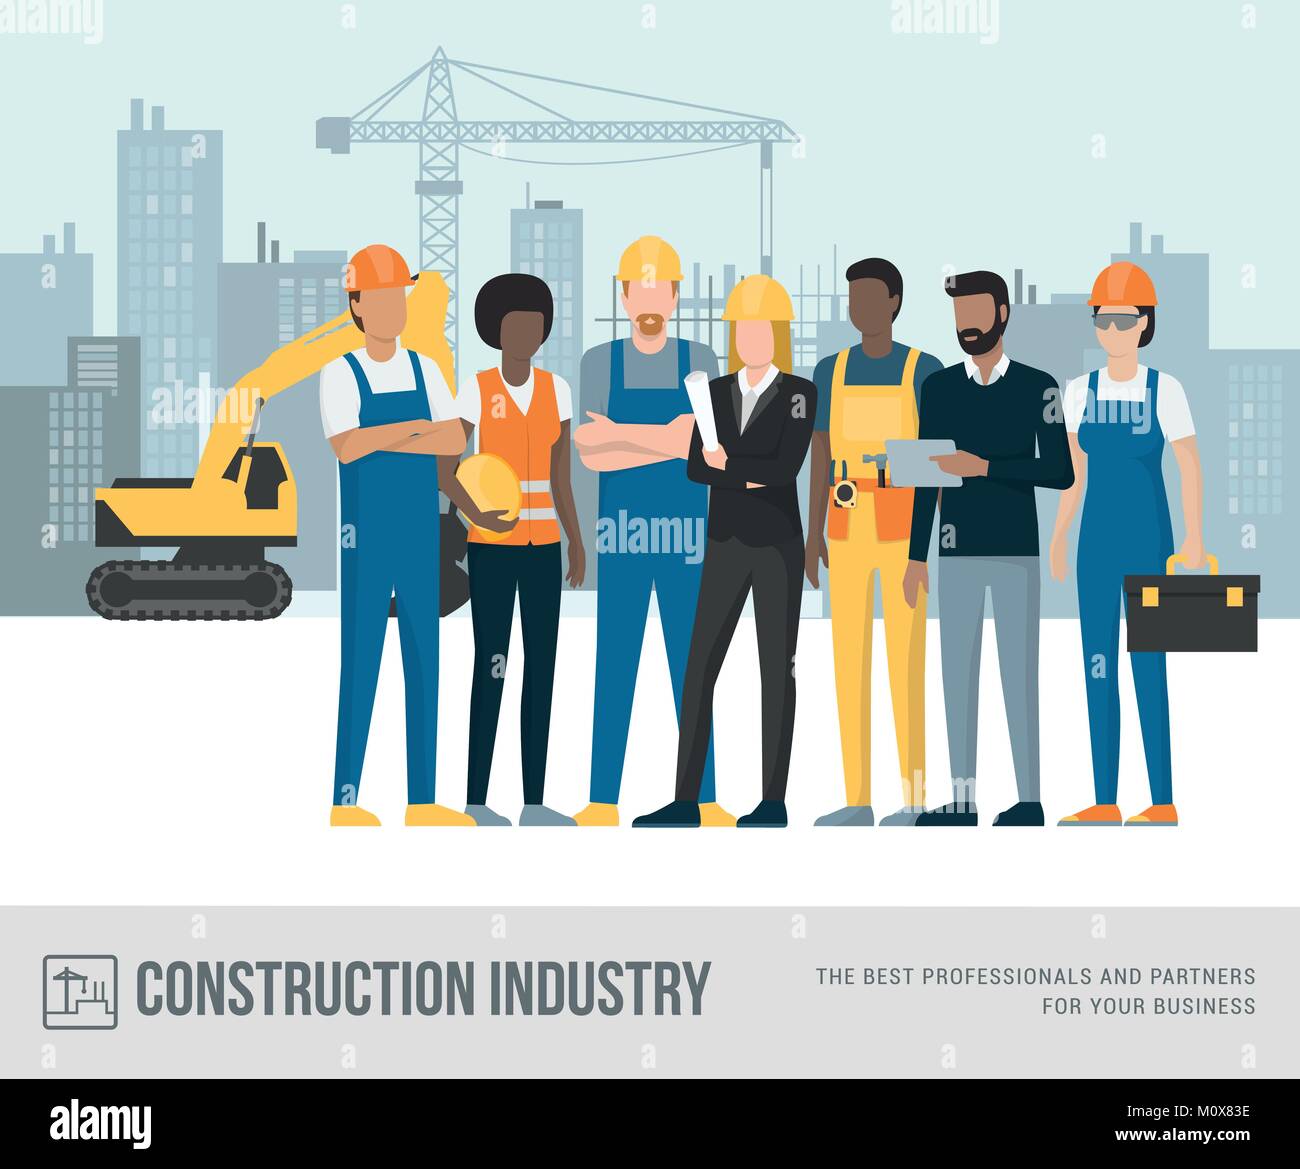 Bauarbeiter und Ingenieure zusammen an der Baustelle, Maschinen und Kran auf dem Hintergrund posiert Stock Vektor